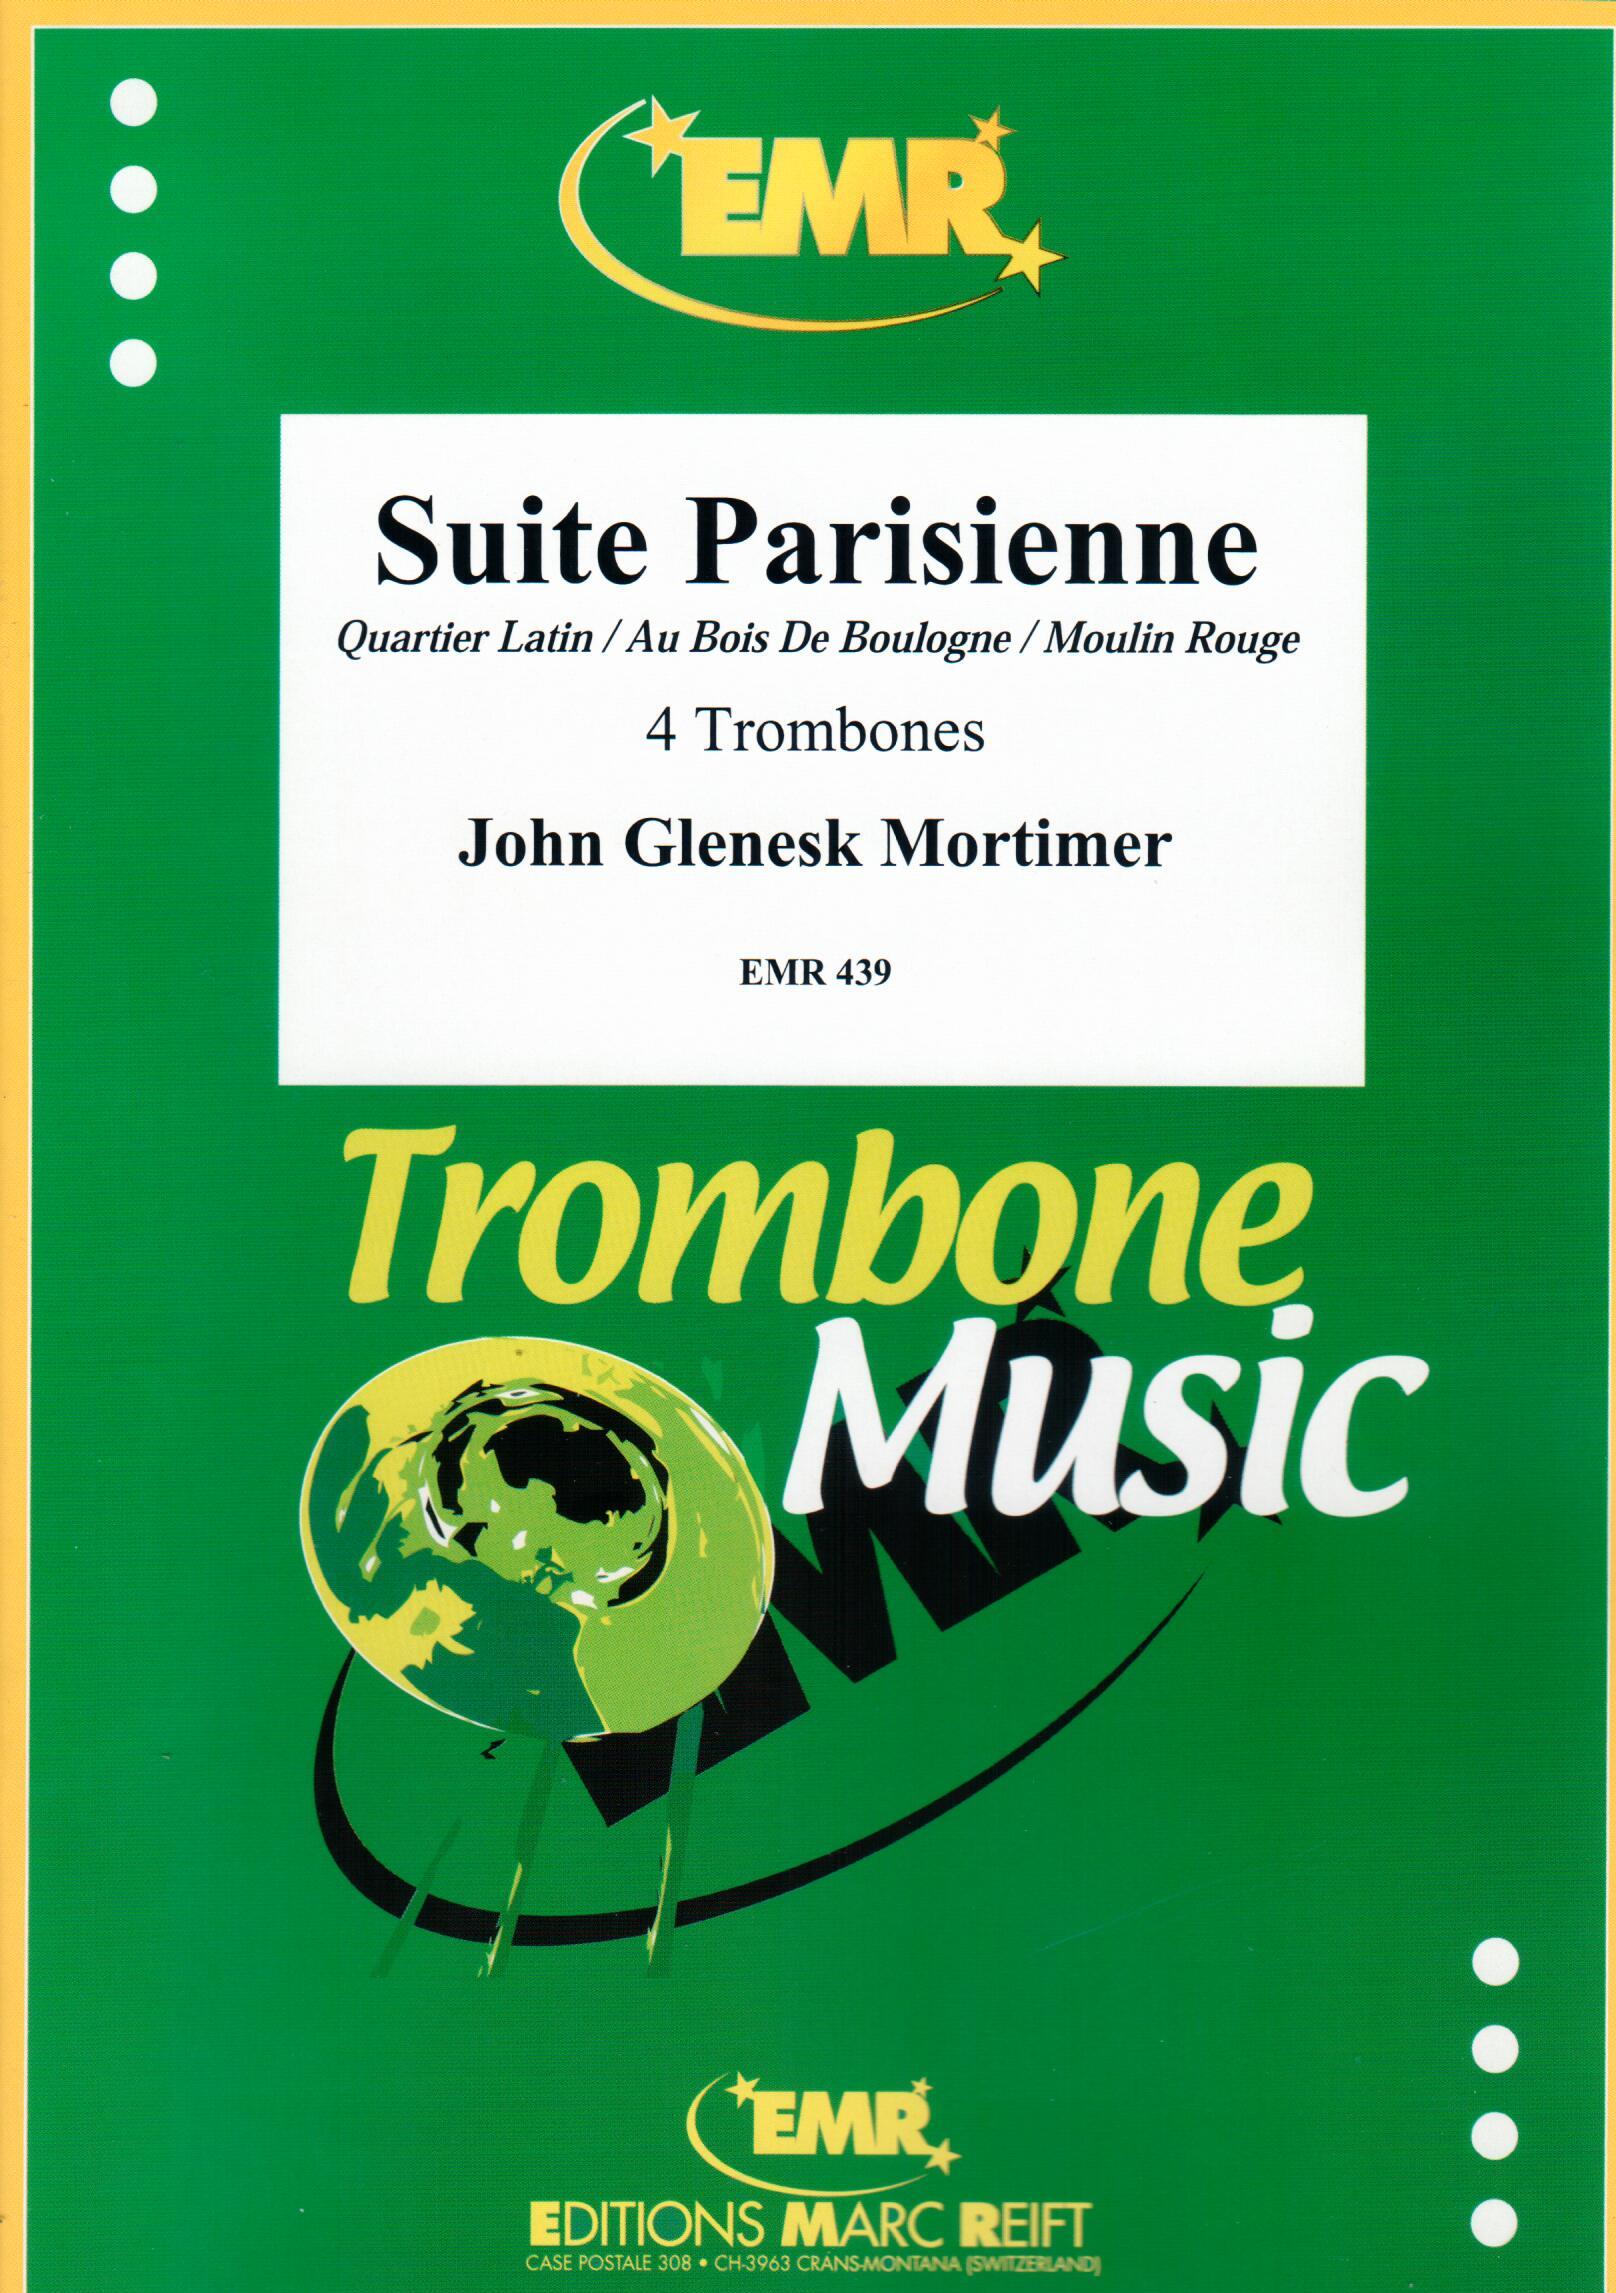 SUITE PARISIENNE, SOLOS - Trombone